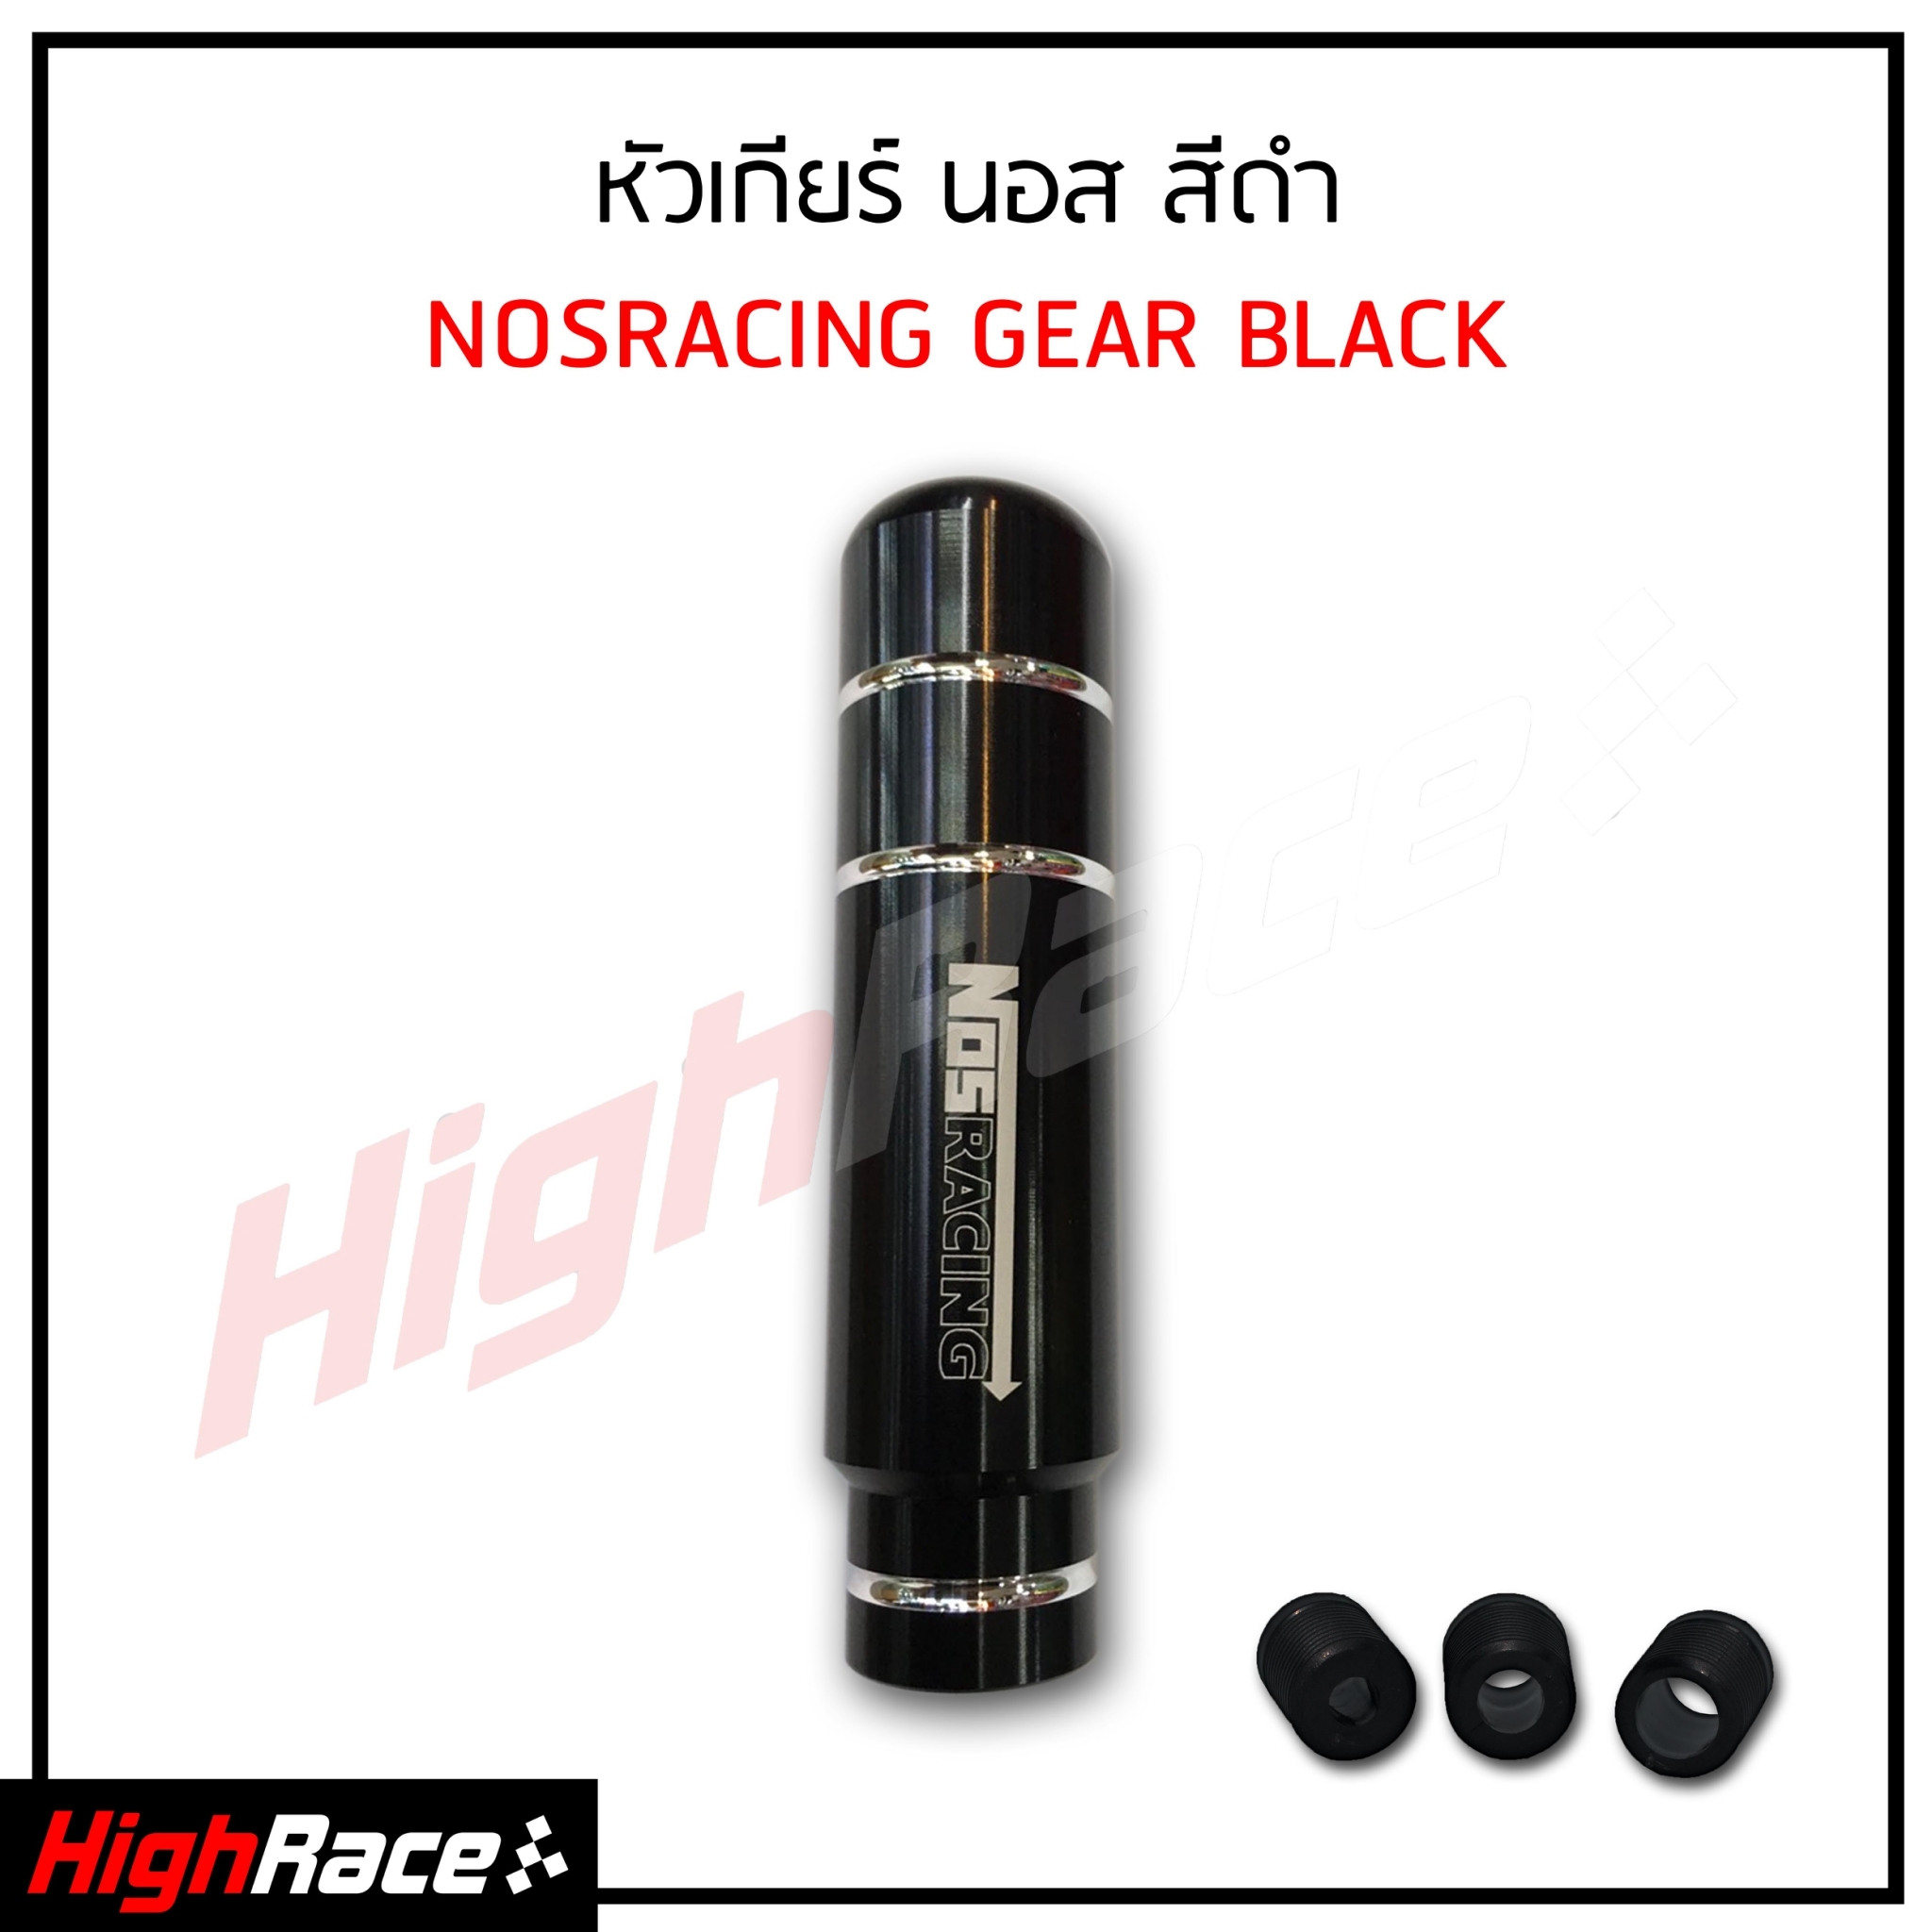 หัวเกียร์ NOS Racing สีดำ ความสูง 13 เซนติเมตร งานอลูมิเนียมอย่างดี หัวเกียร์รถยนต์ หัวเกียร์